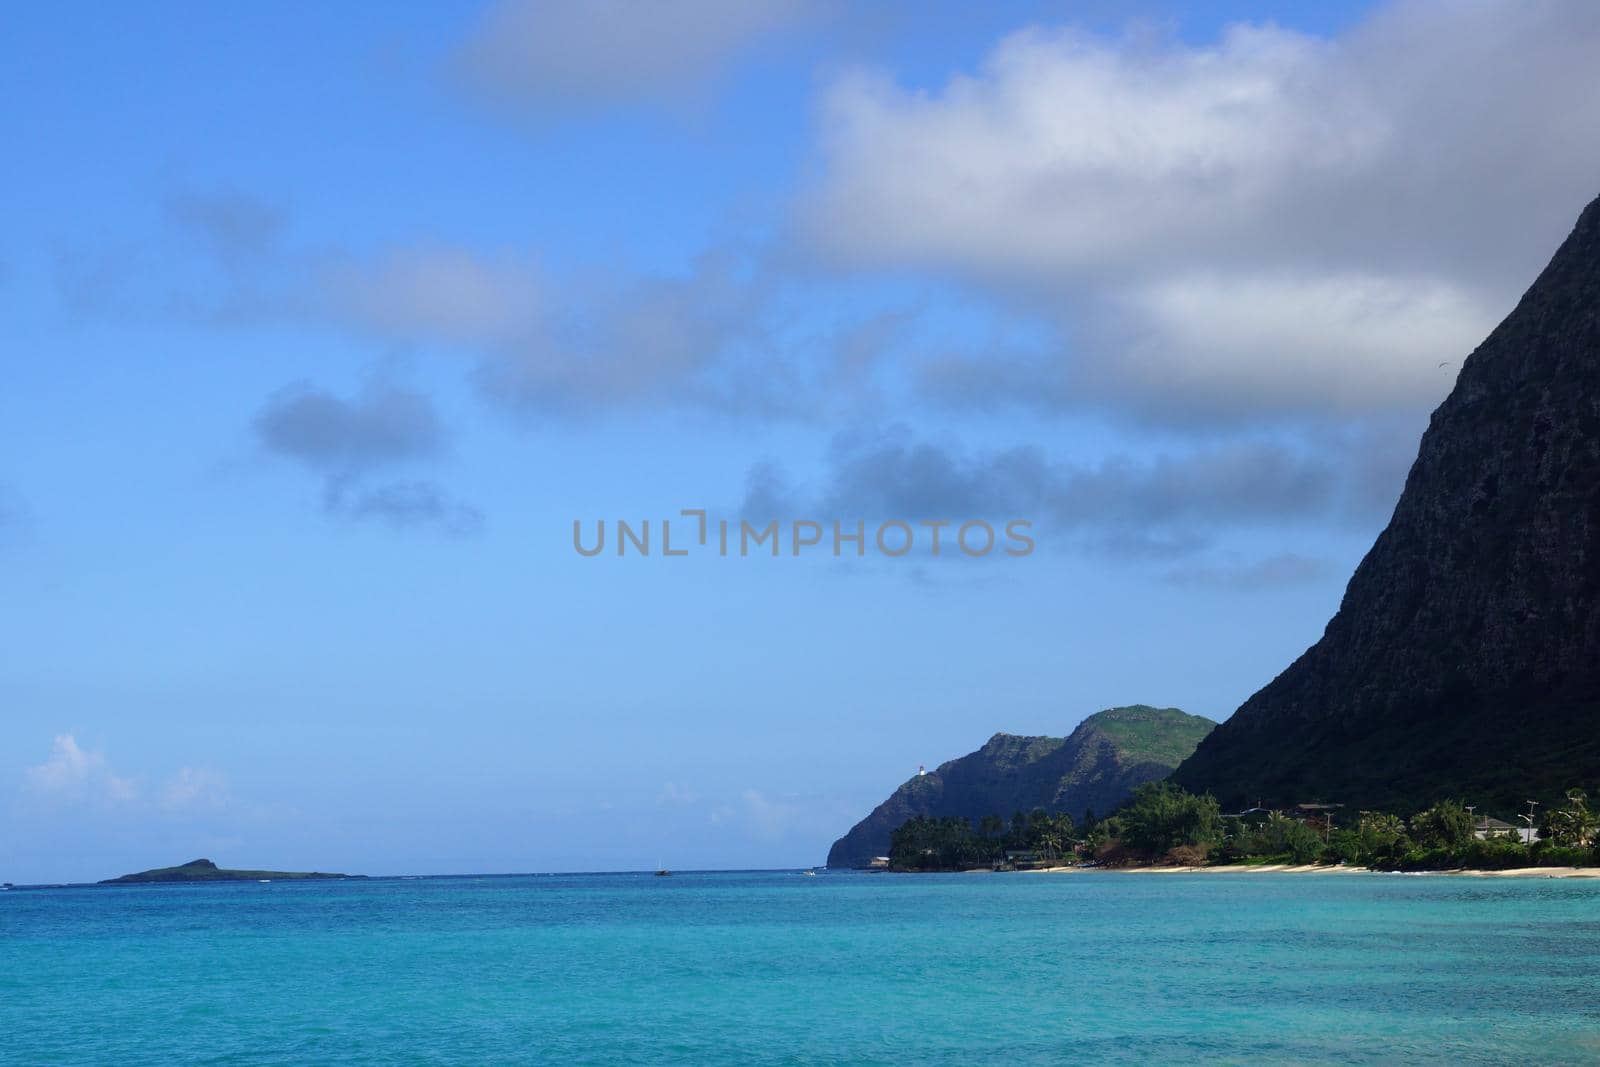 Waimanalo Beach, Rock Island, and Makapuu on a wonderful day on the east side of Oahu, Hawaii.